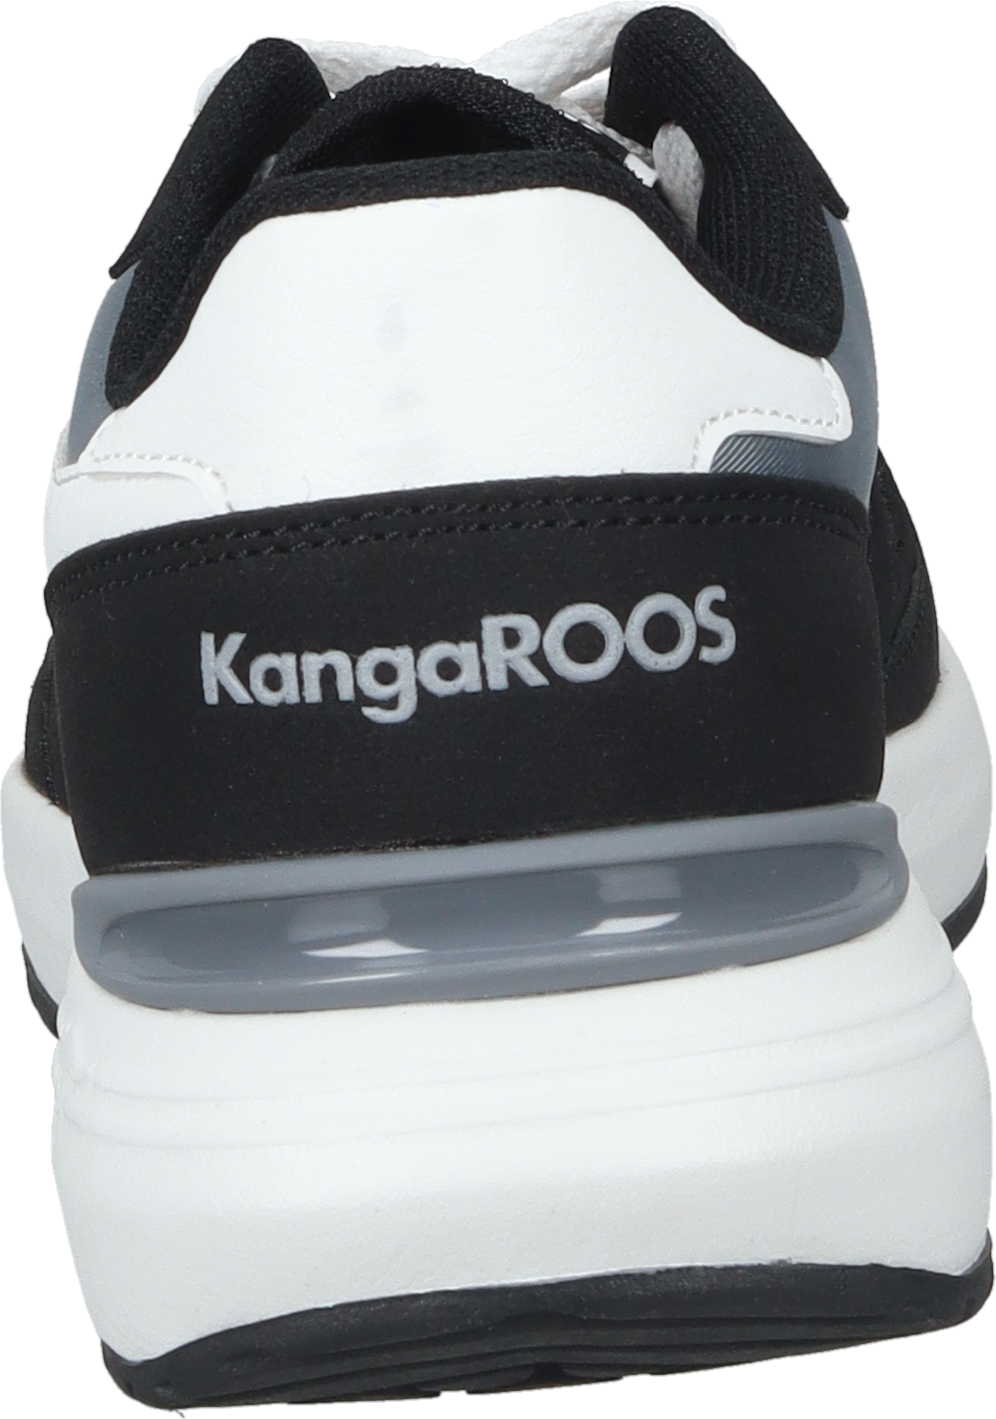 K-Sneak Jay KangaROOS Sneaker